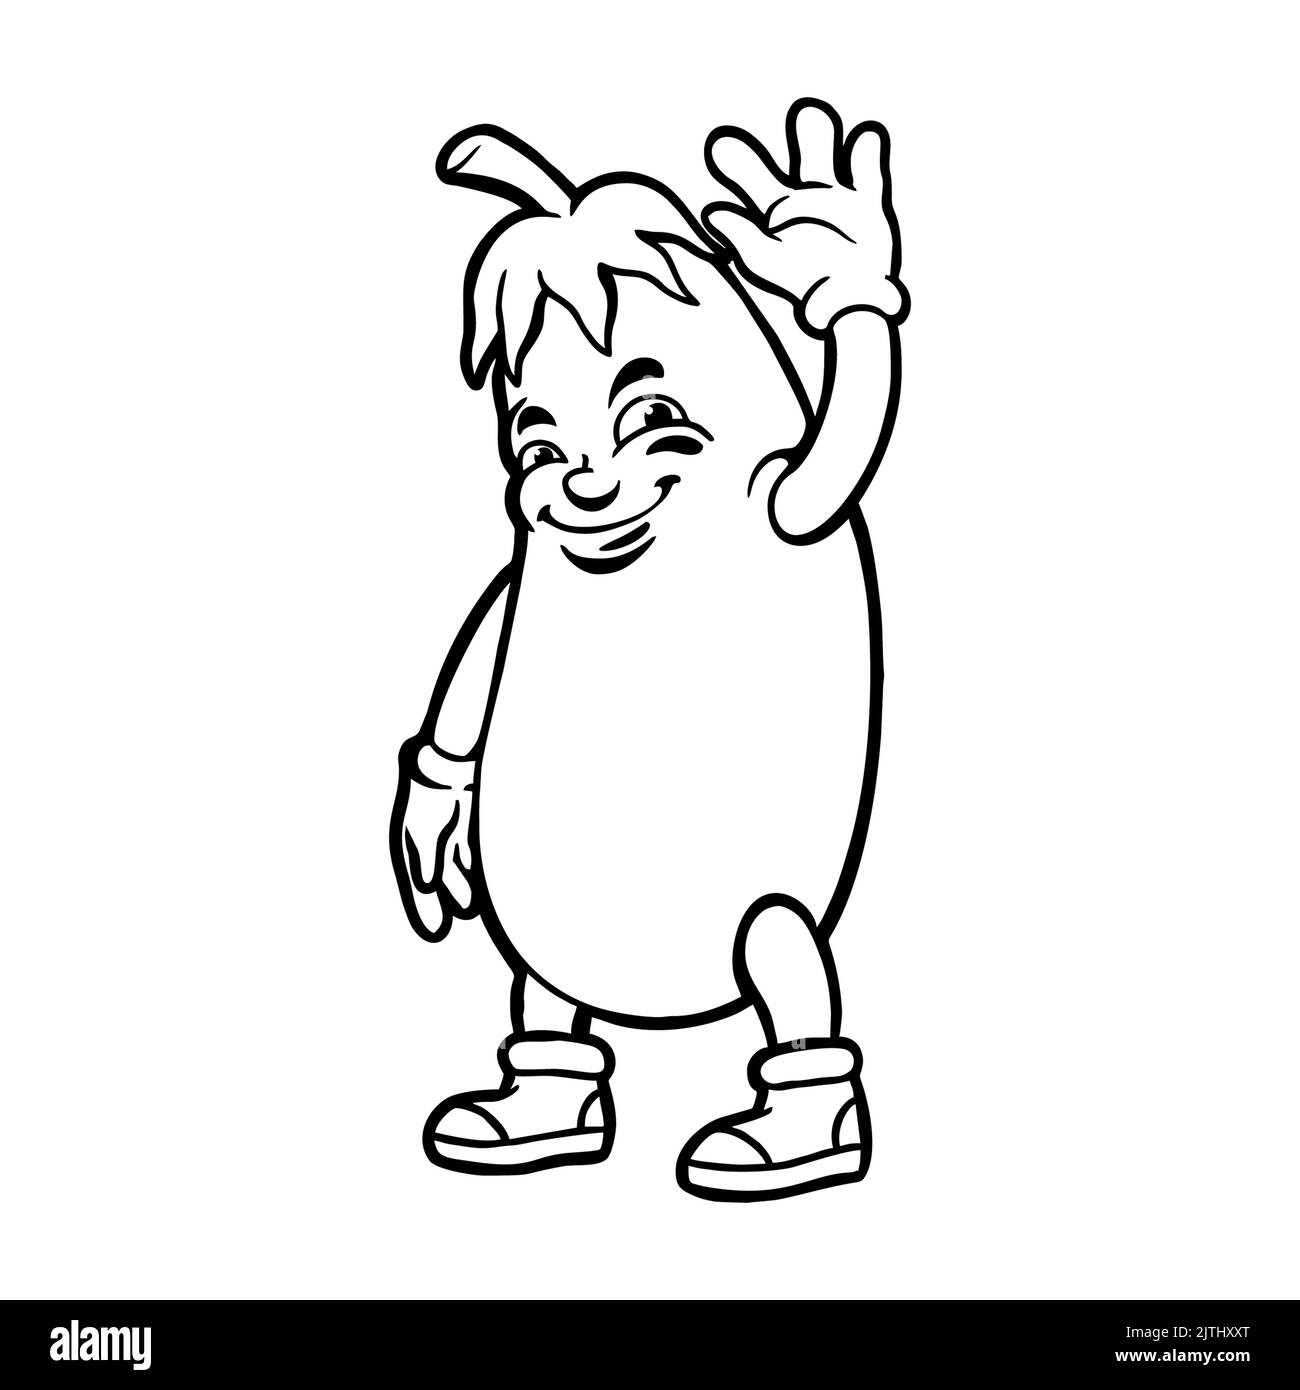 Livre de coloriage de personnage de dessin animé d'aubergine illustrations vectorielles pour votre travail logo, t-shirt de marchandise de mascotte, autocollants et dessins d'étiquettes, affiche, plat Banque D'Images